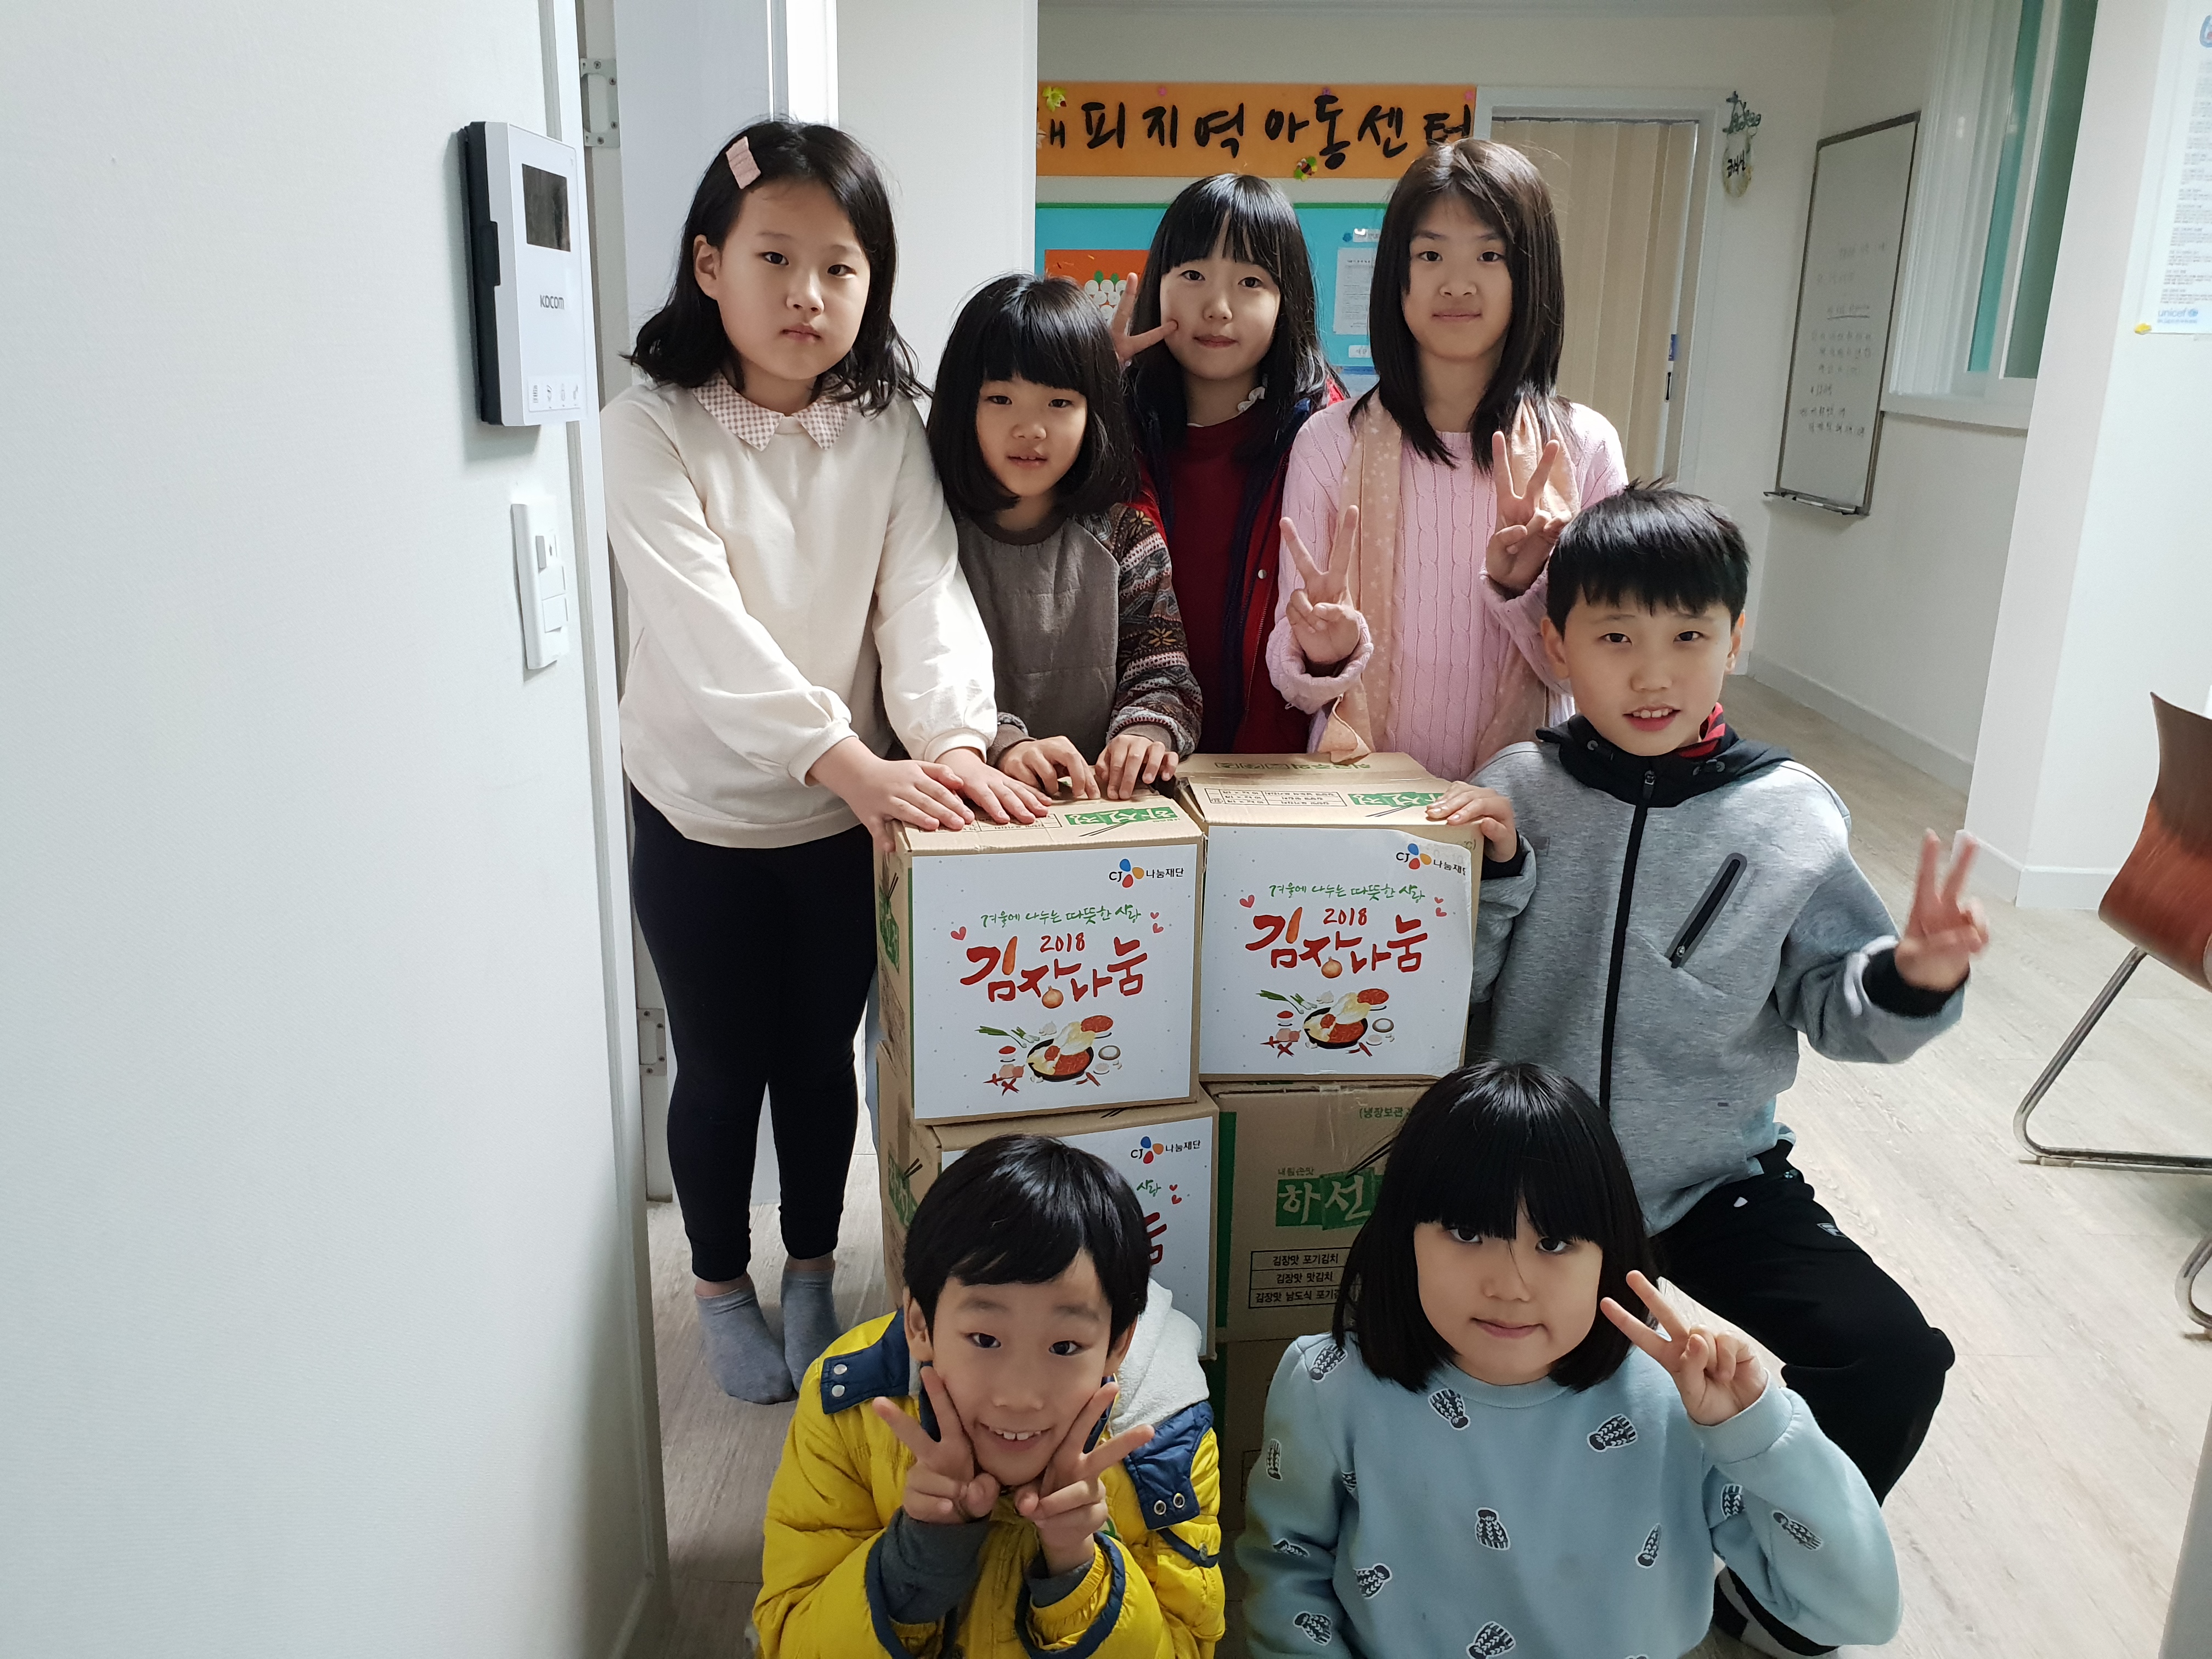 김치수령후 아이들과함께 기뻐하는 모습